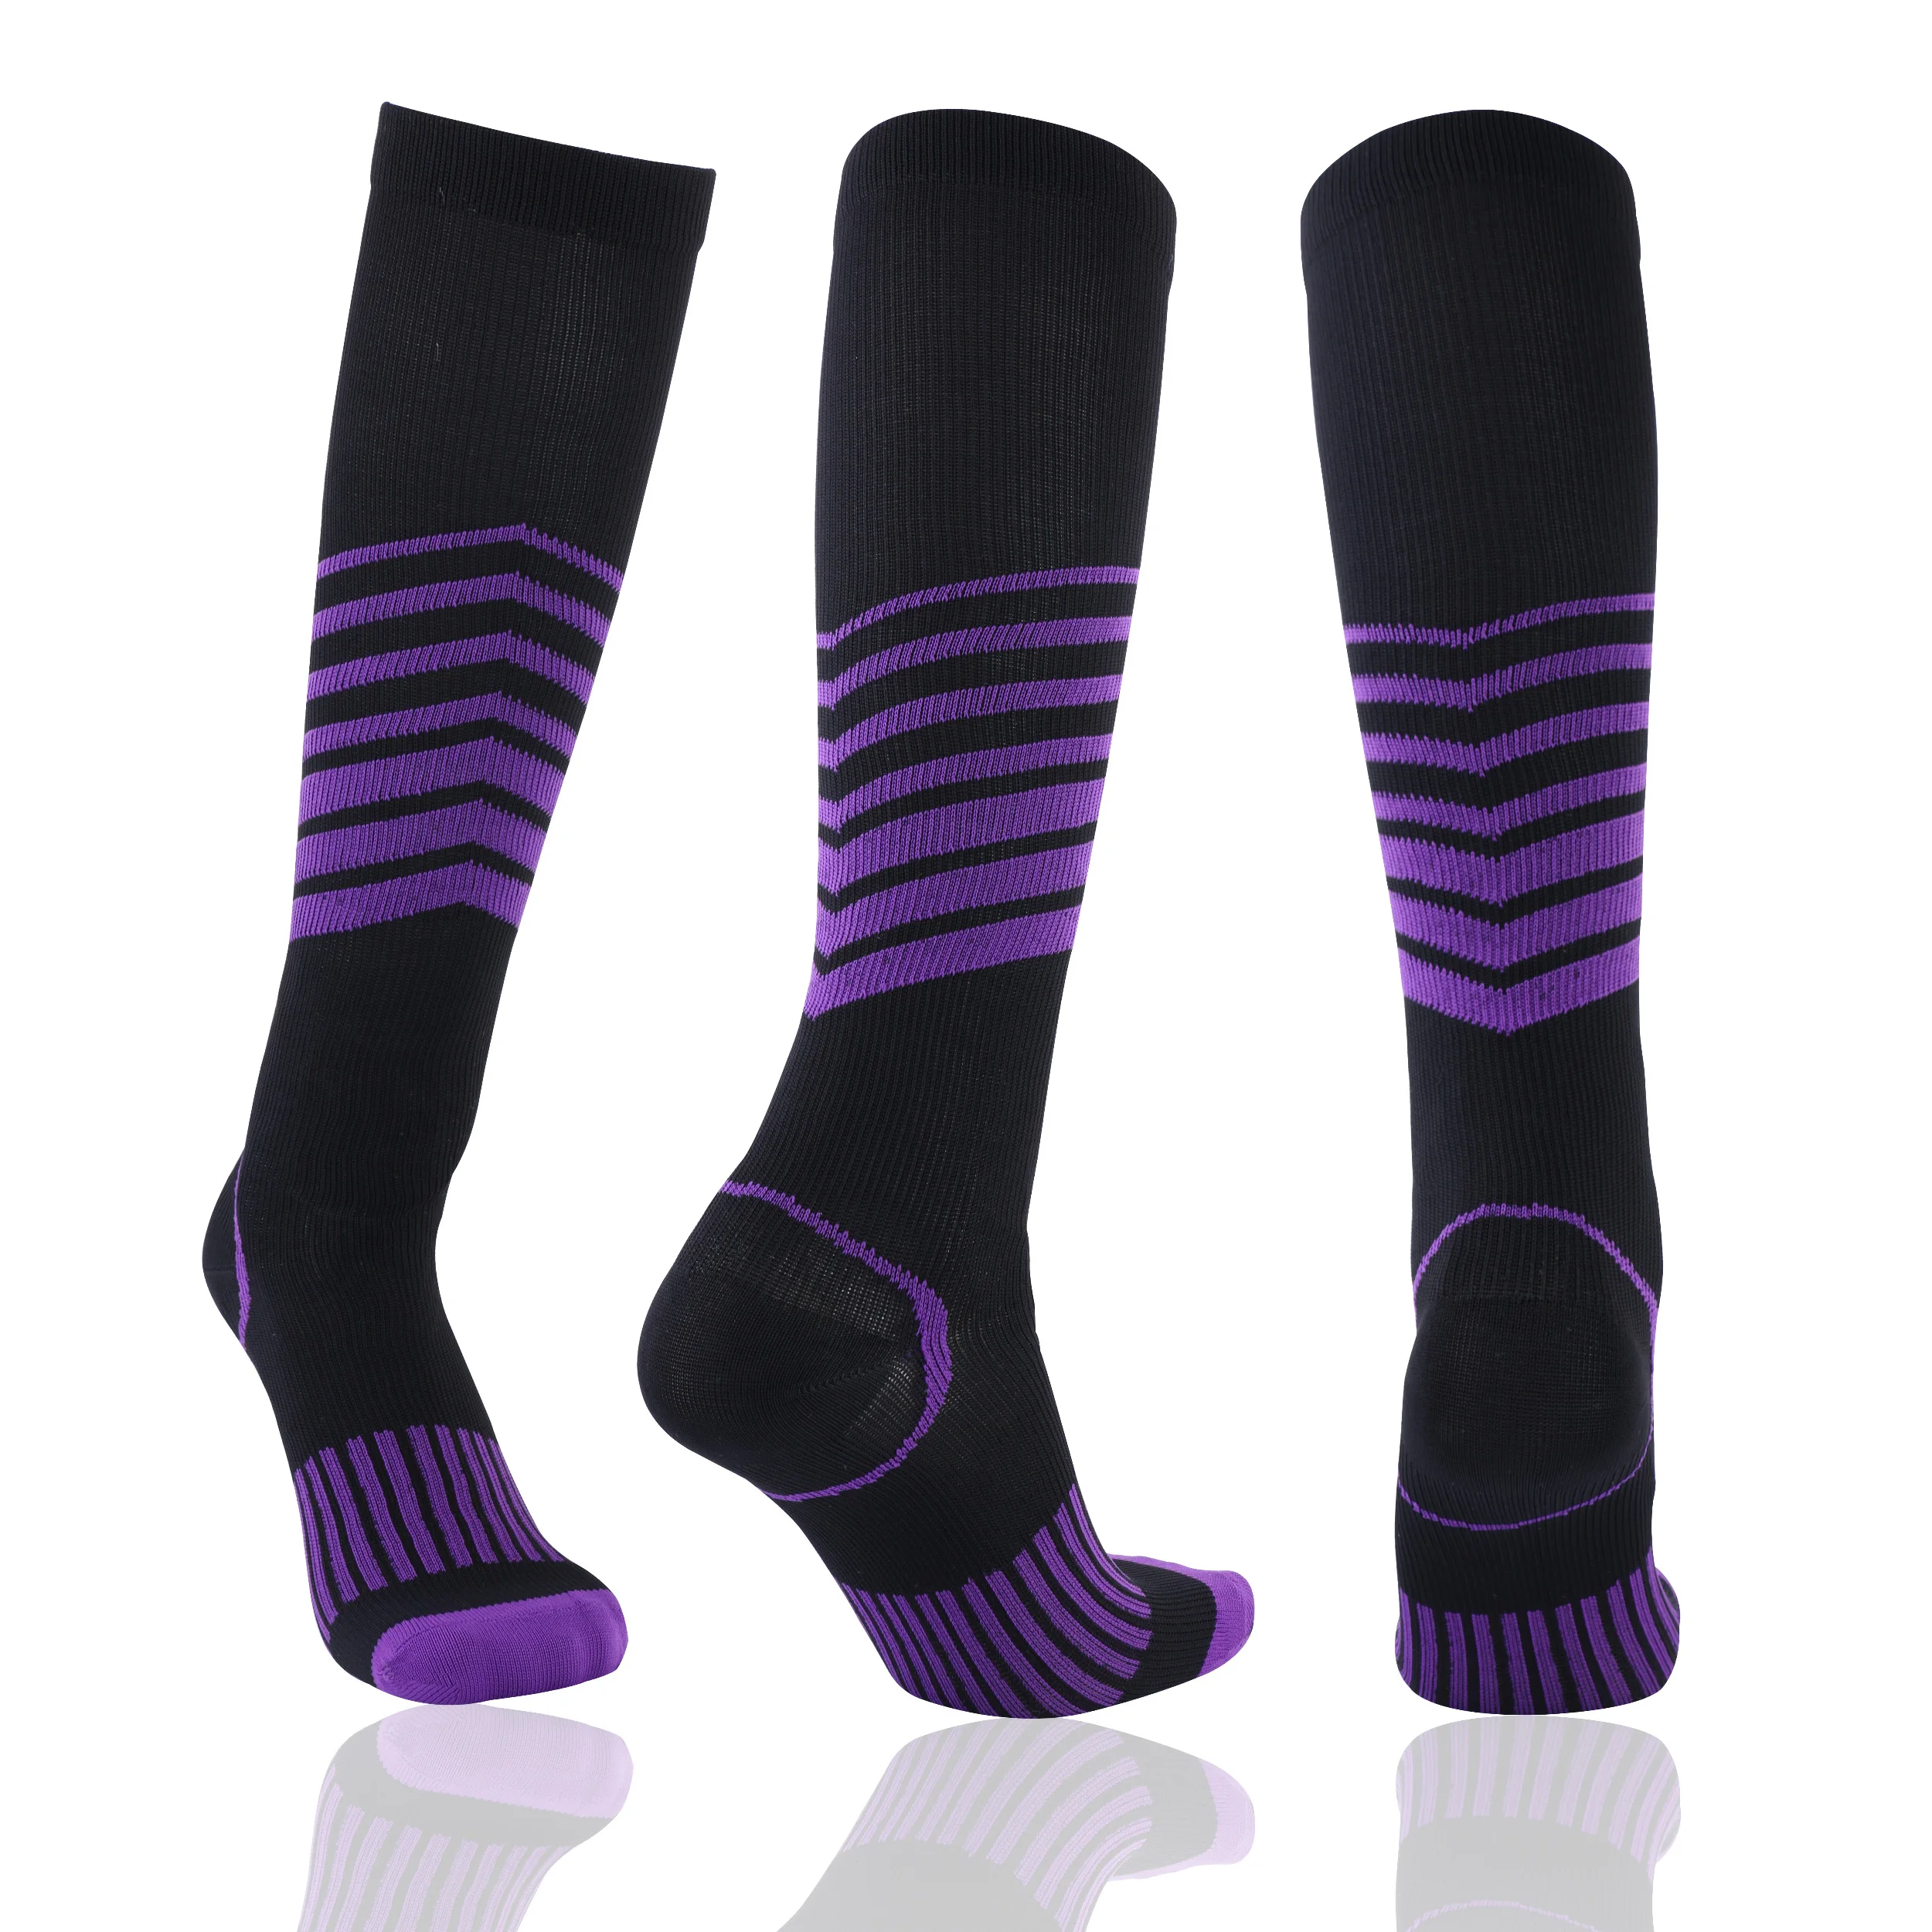 Спортивные носки унисекс, мужские носки из чесаного хлопка, Компрессионные носки, Модные цветные носки с квадратным рисунком, 1 пара